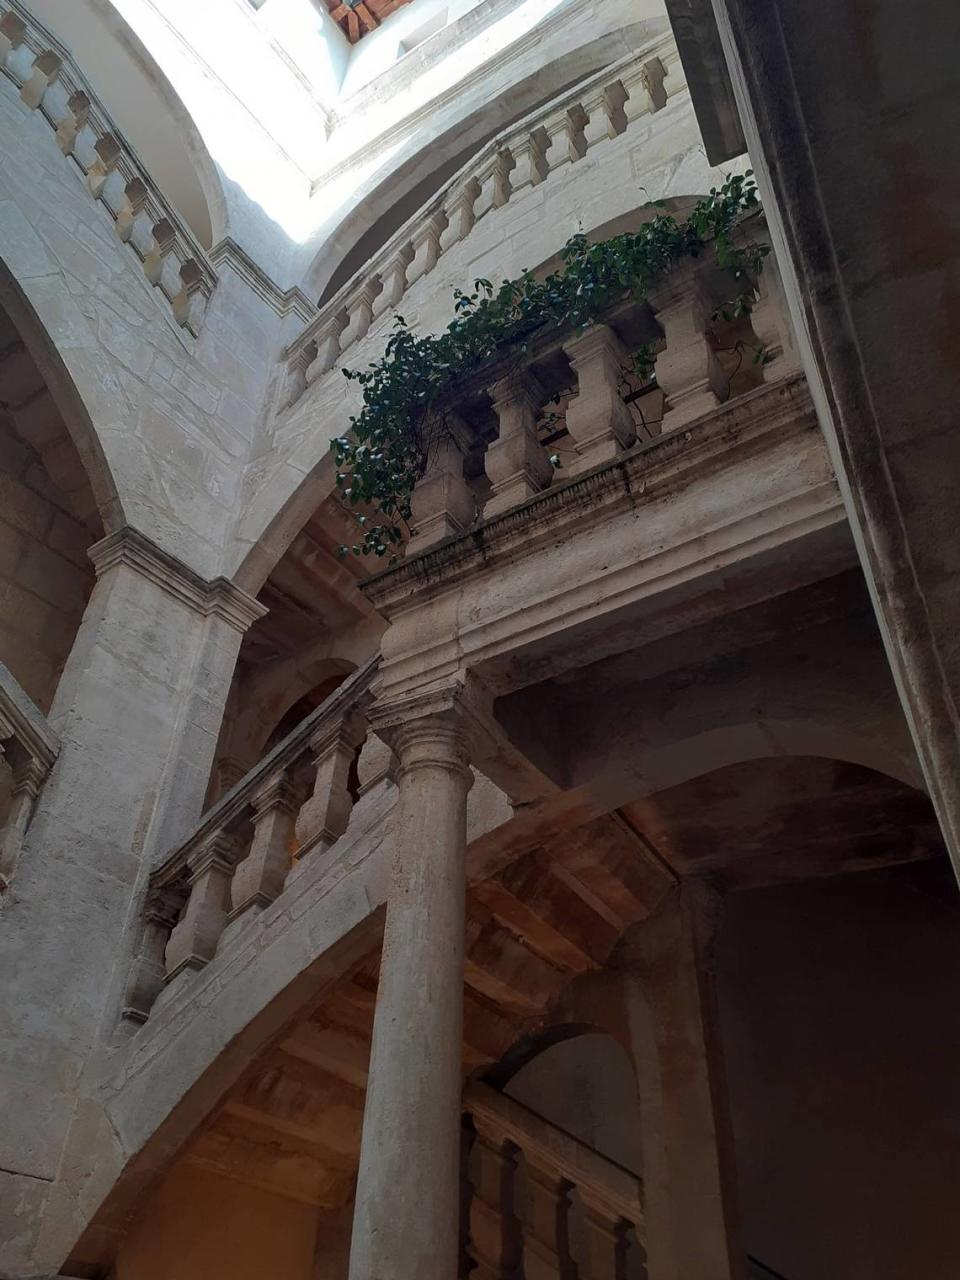 Palacete de La Baume, ejemplo de arquitectura palaciega en Nîmes. Fotos cortesía/William Navarrete